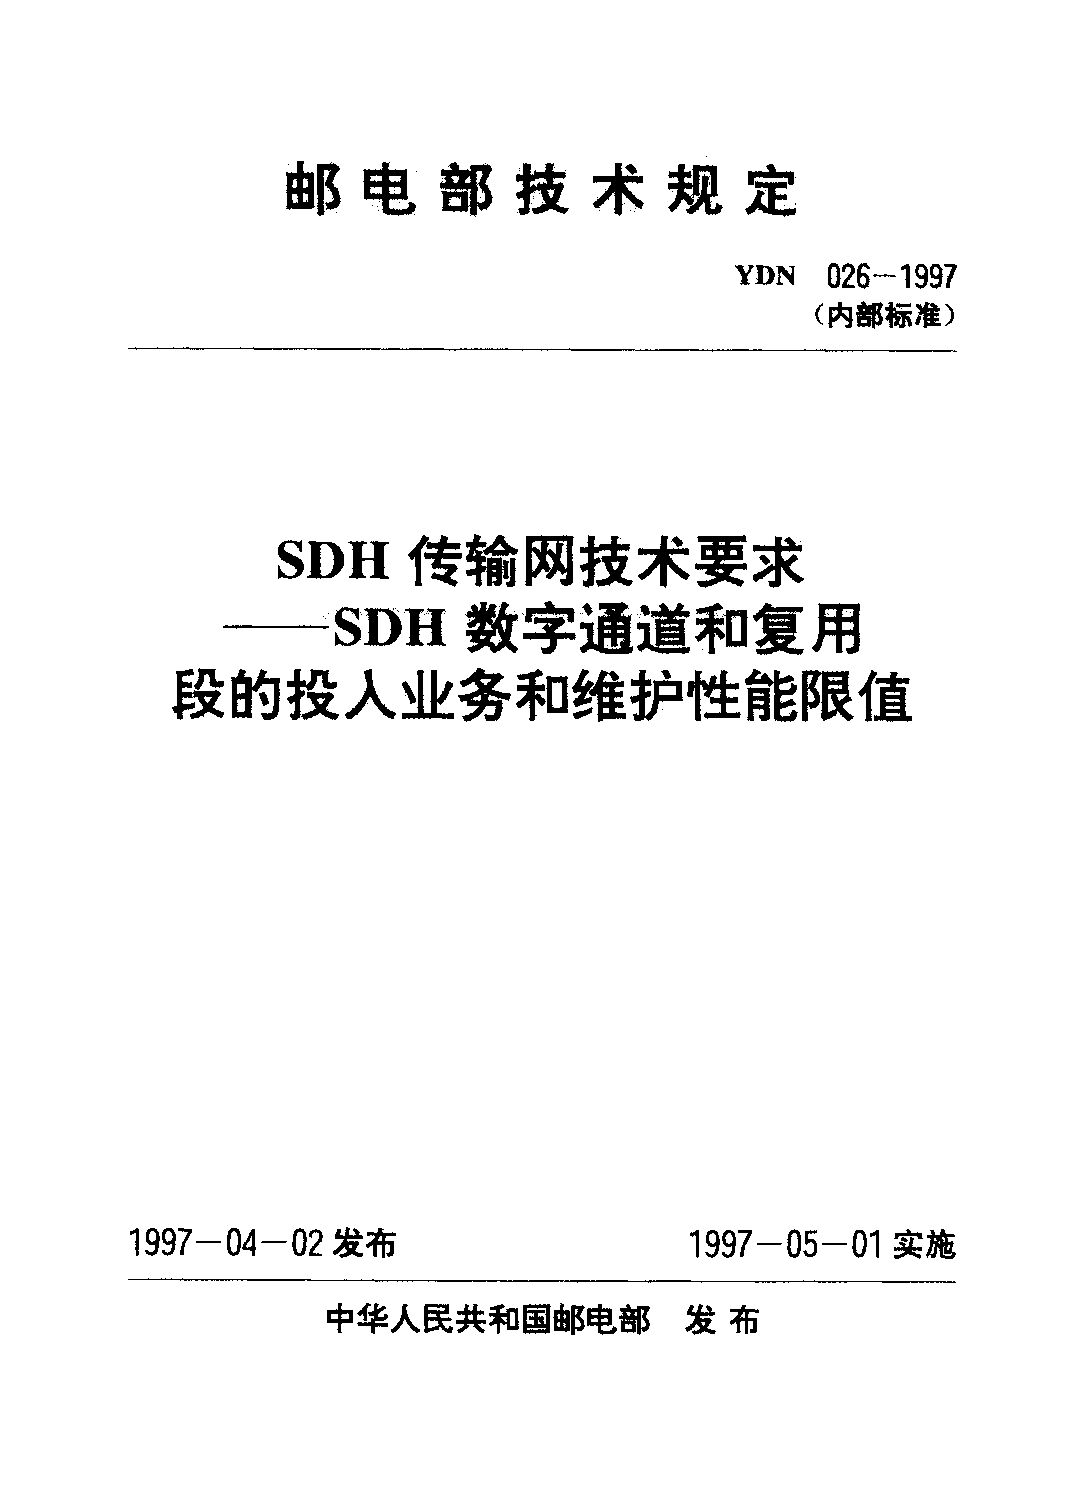 YDN 026-1997封面图